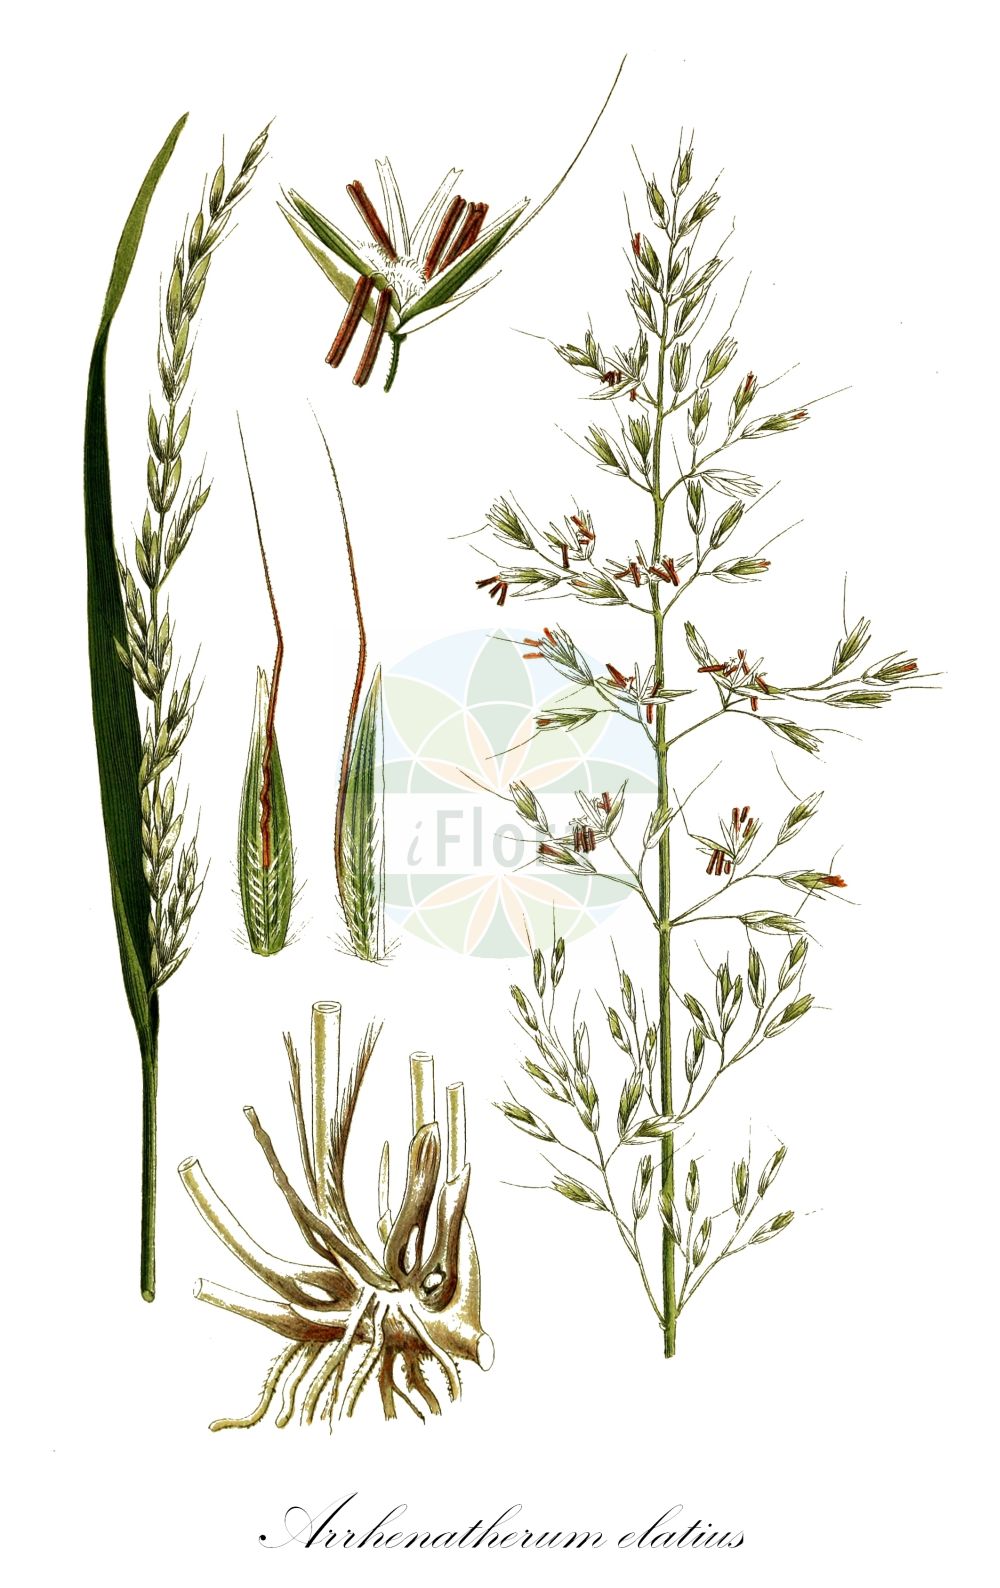 Historische Abbildung von Arrhenatherum elatius (Gewöhnlicher Glatthafer - False Oat-grass). Das Bild zeigt Blatt, Bluete, Frucht und Same. ---- Historical Drawing of Arrhenatherum elatius (Gewöhnlicher Glatthafer - False Oat-grass). The image is showing leaf, flower, fruit and seed.(Arrhenatherum elatius,Gewöhnlicher Glatthafer,False Oat-grass,Arrhenatherum avenaceum,Arrhenatherum biaristatum,Arrhenatherum elatius,Avena elata,Avena elatior,Holcus avenaceus,Gewoehnlicher Glatthafer,Franzoesisches Raygras,Franzoesisches Weidelgras,Knolliger Glatthafer,False Oat-grass,False Oat,Ribbon Grass,Tall Oatgrass,Arrhenatherum,Glatthafer,Oatgrass,Poaceae,Süßgräser,Grass family,Blatt,Bluete,Frucht,Same,leaf,flower,fruit,seed,Lindman (1901-1905))